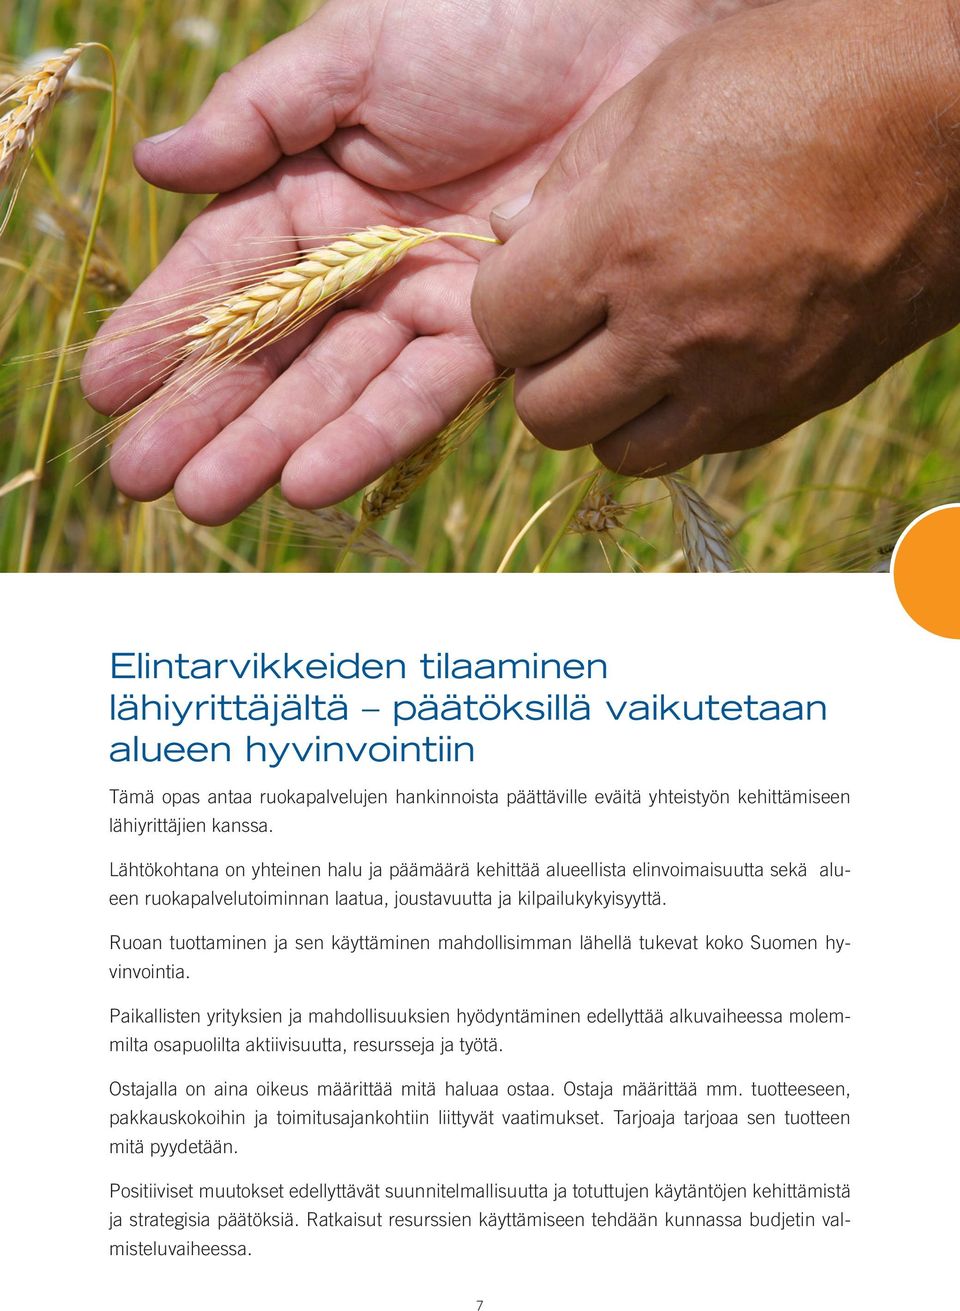 Ruoan tuottaminen ja sen käyttäminen mahdollisimman lähellä tukevat koko Suomen hyvinvointia.